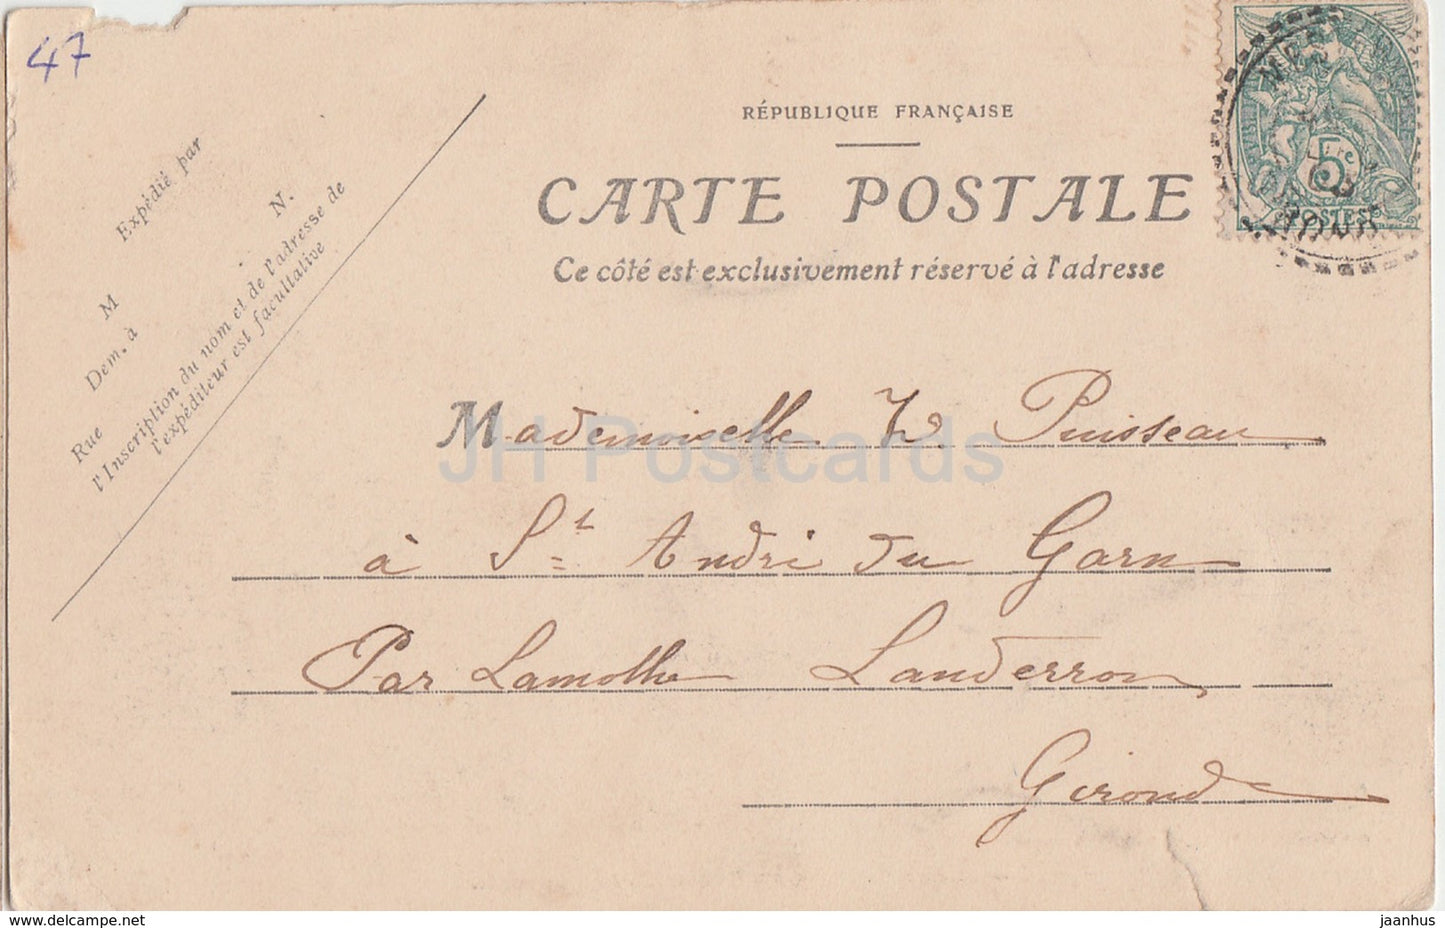 Duras pres Marmande - Ancien Chateau du Duc de Duras - castle - old postcard - France - used